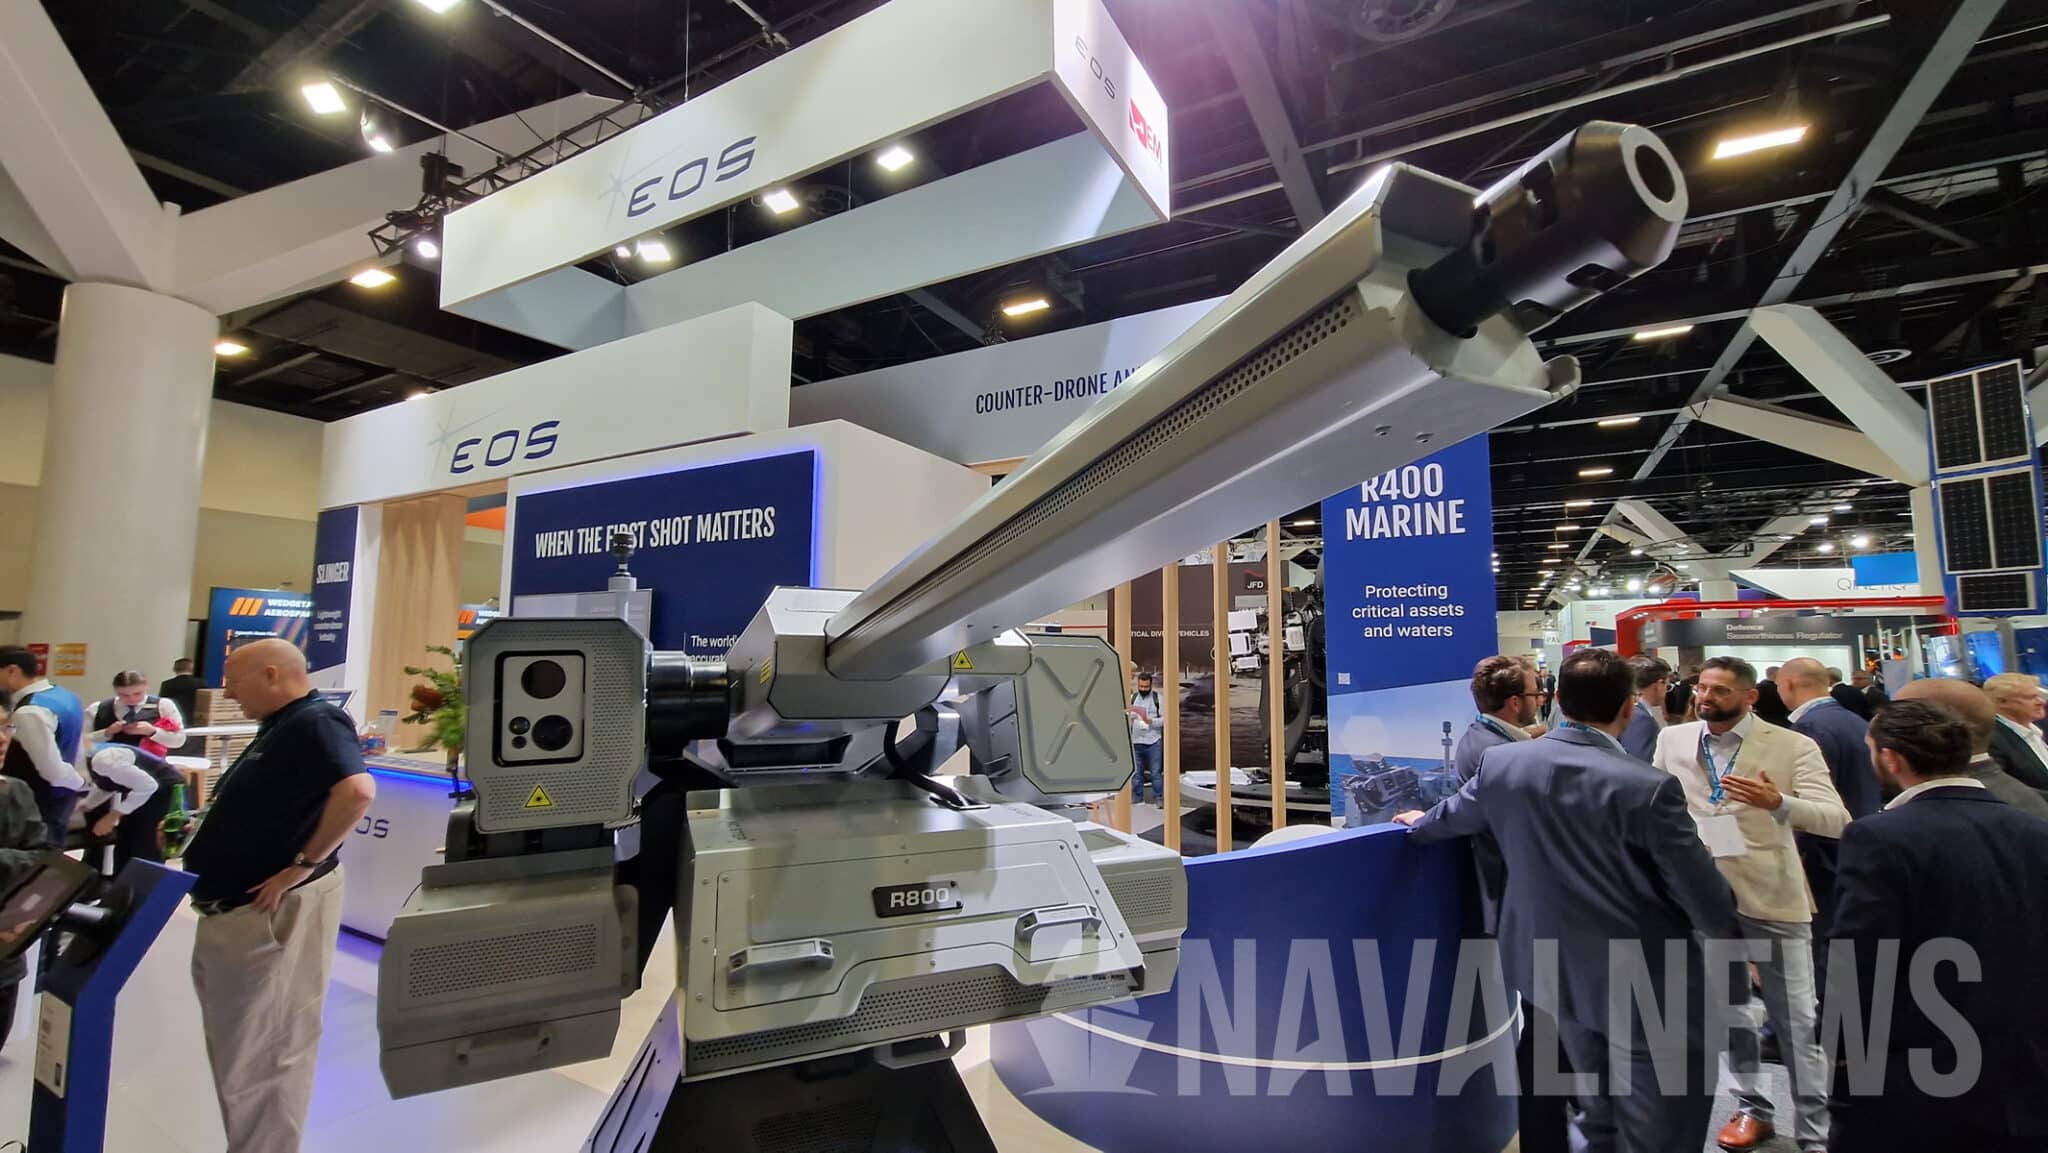 Dazzler - kampmodul med 500 W laservåben, automatkanon og maskingevær til bekæmpelse af droner